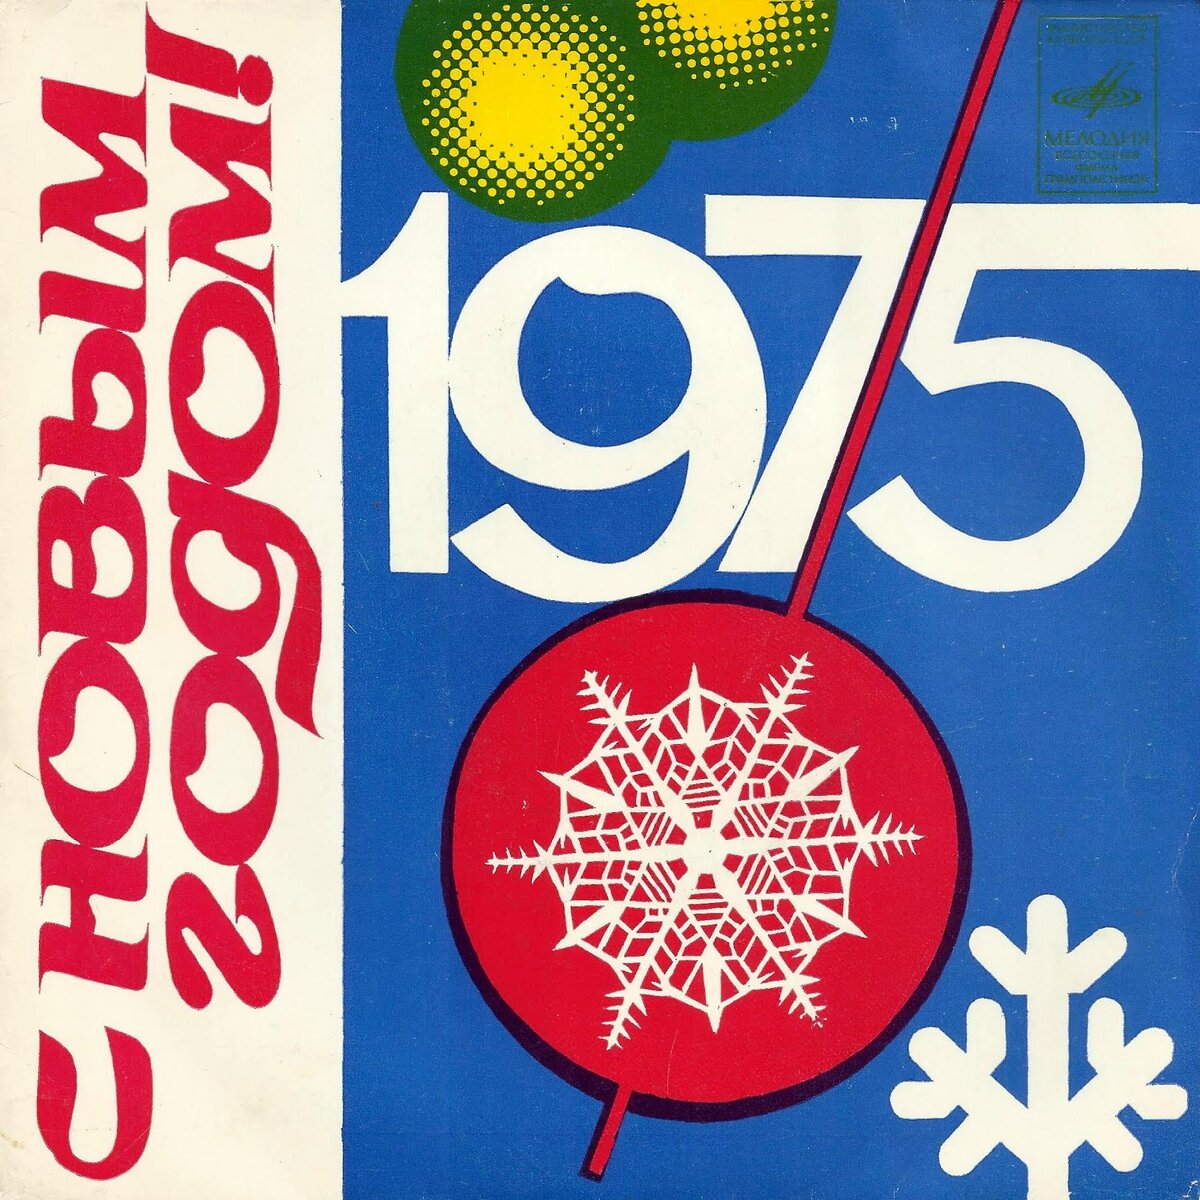 Первые два диска - гиганта серии «С Новым годом!» фирма «Мелодия» выпустила в 1973 году, а последняя пластинка этой серии - «Вас поздравляют звёзды» вышла в 1990-м.-2